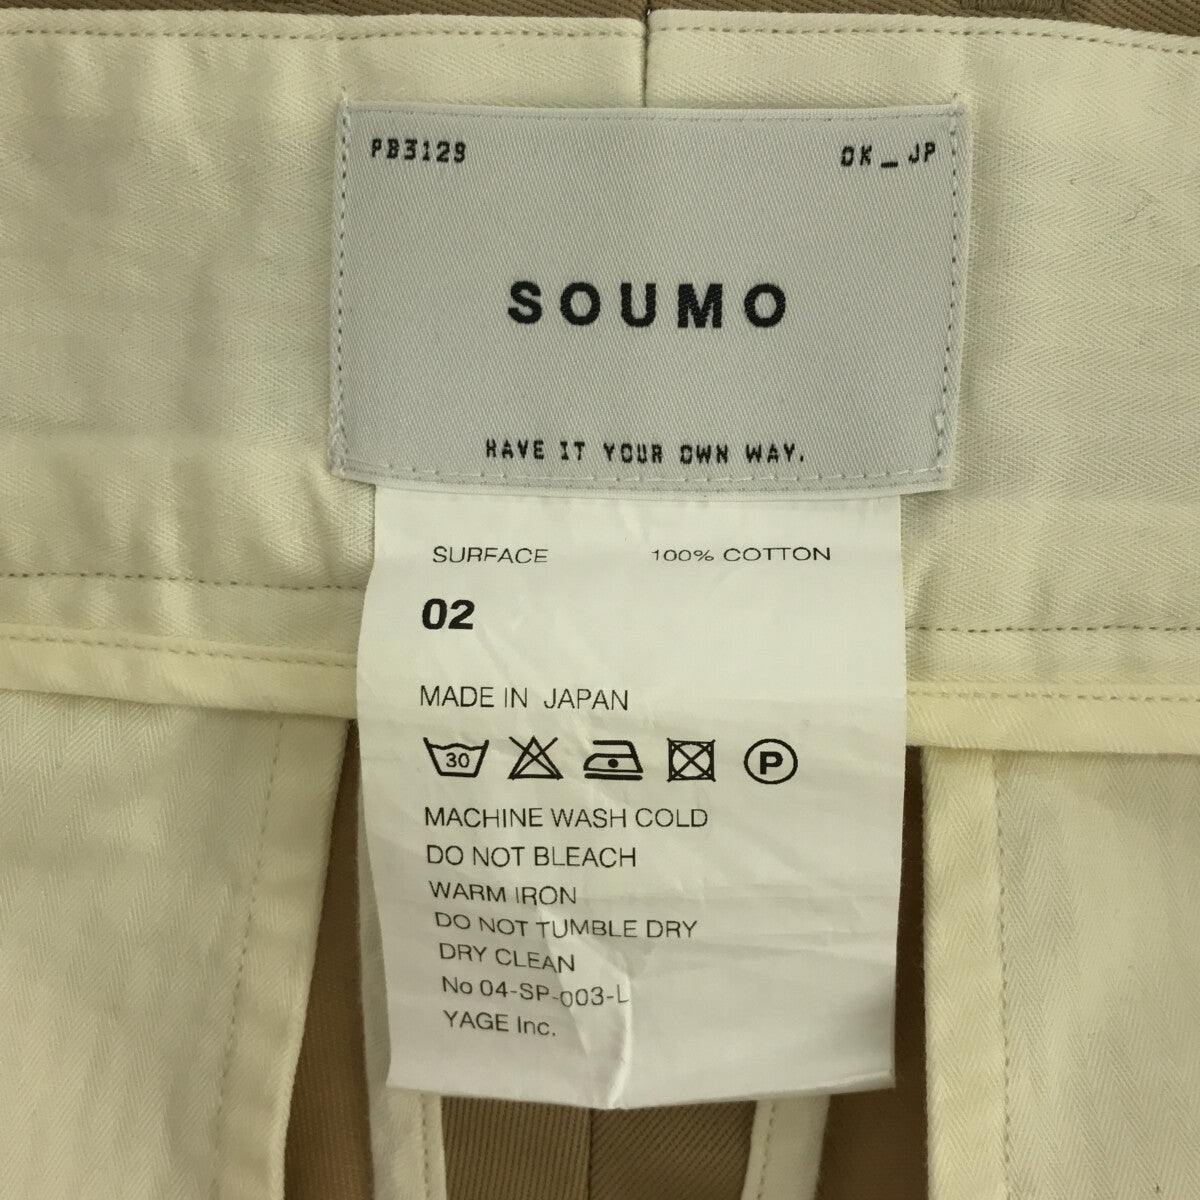 高級ブランド タック ビッグ SOUMO 美品 チノ 2 サイズ 04-sp-003 